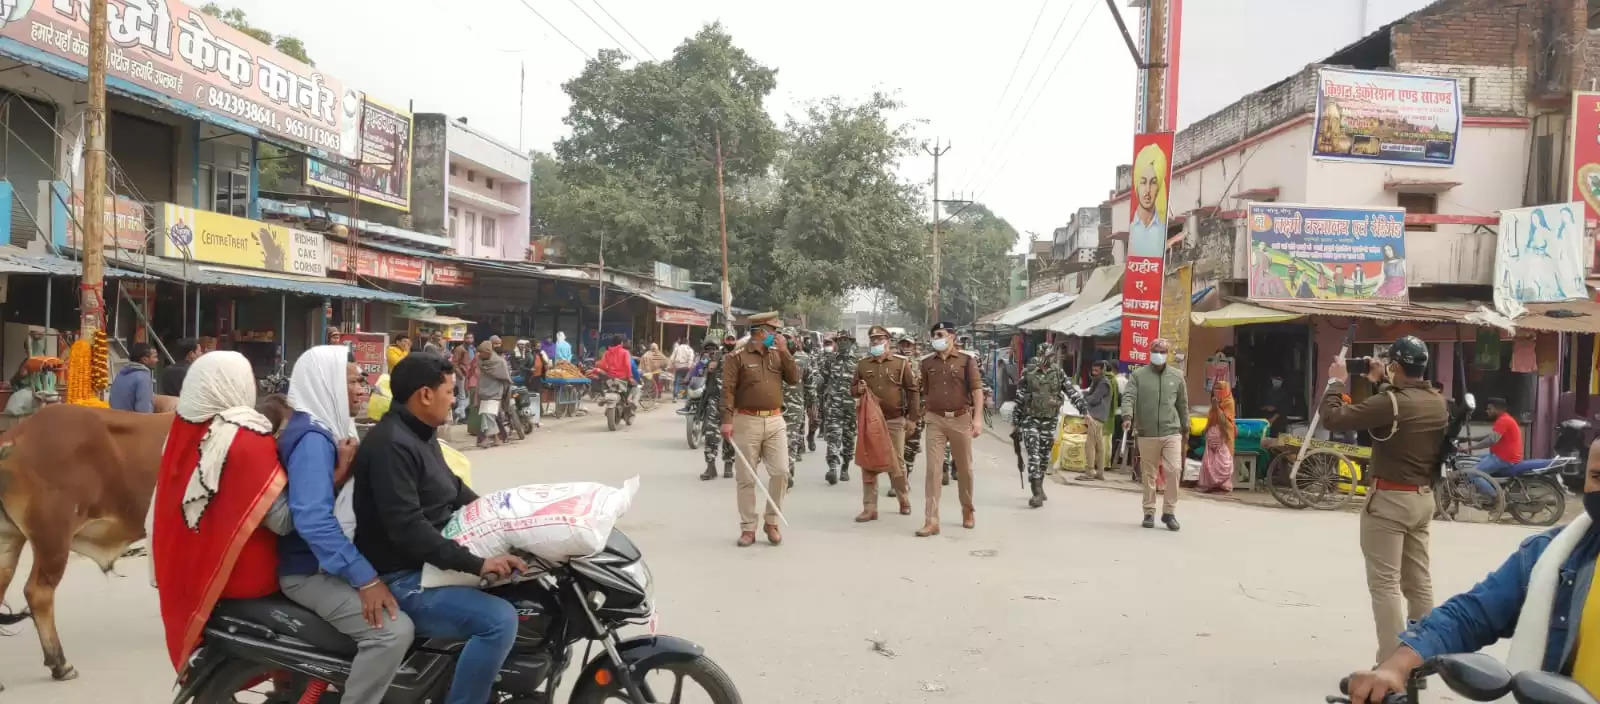 Route March in Chaniyan Bazar